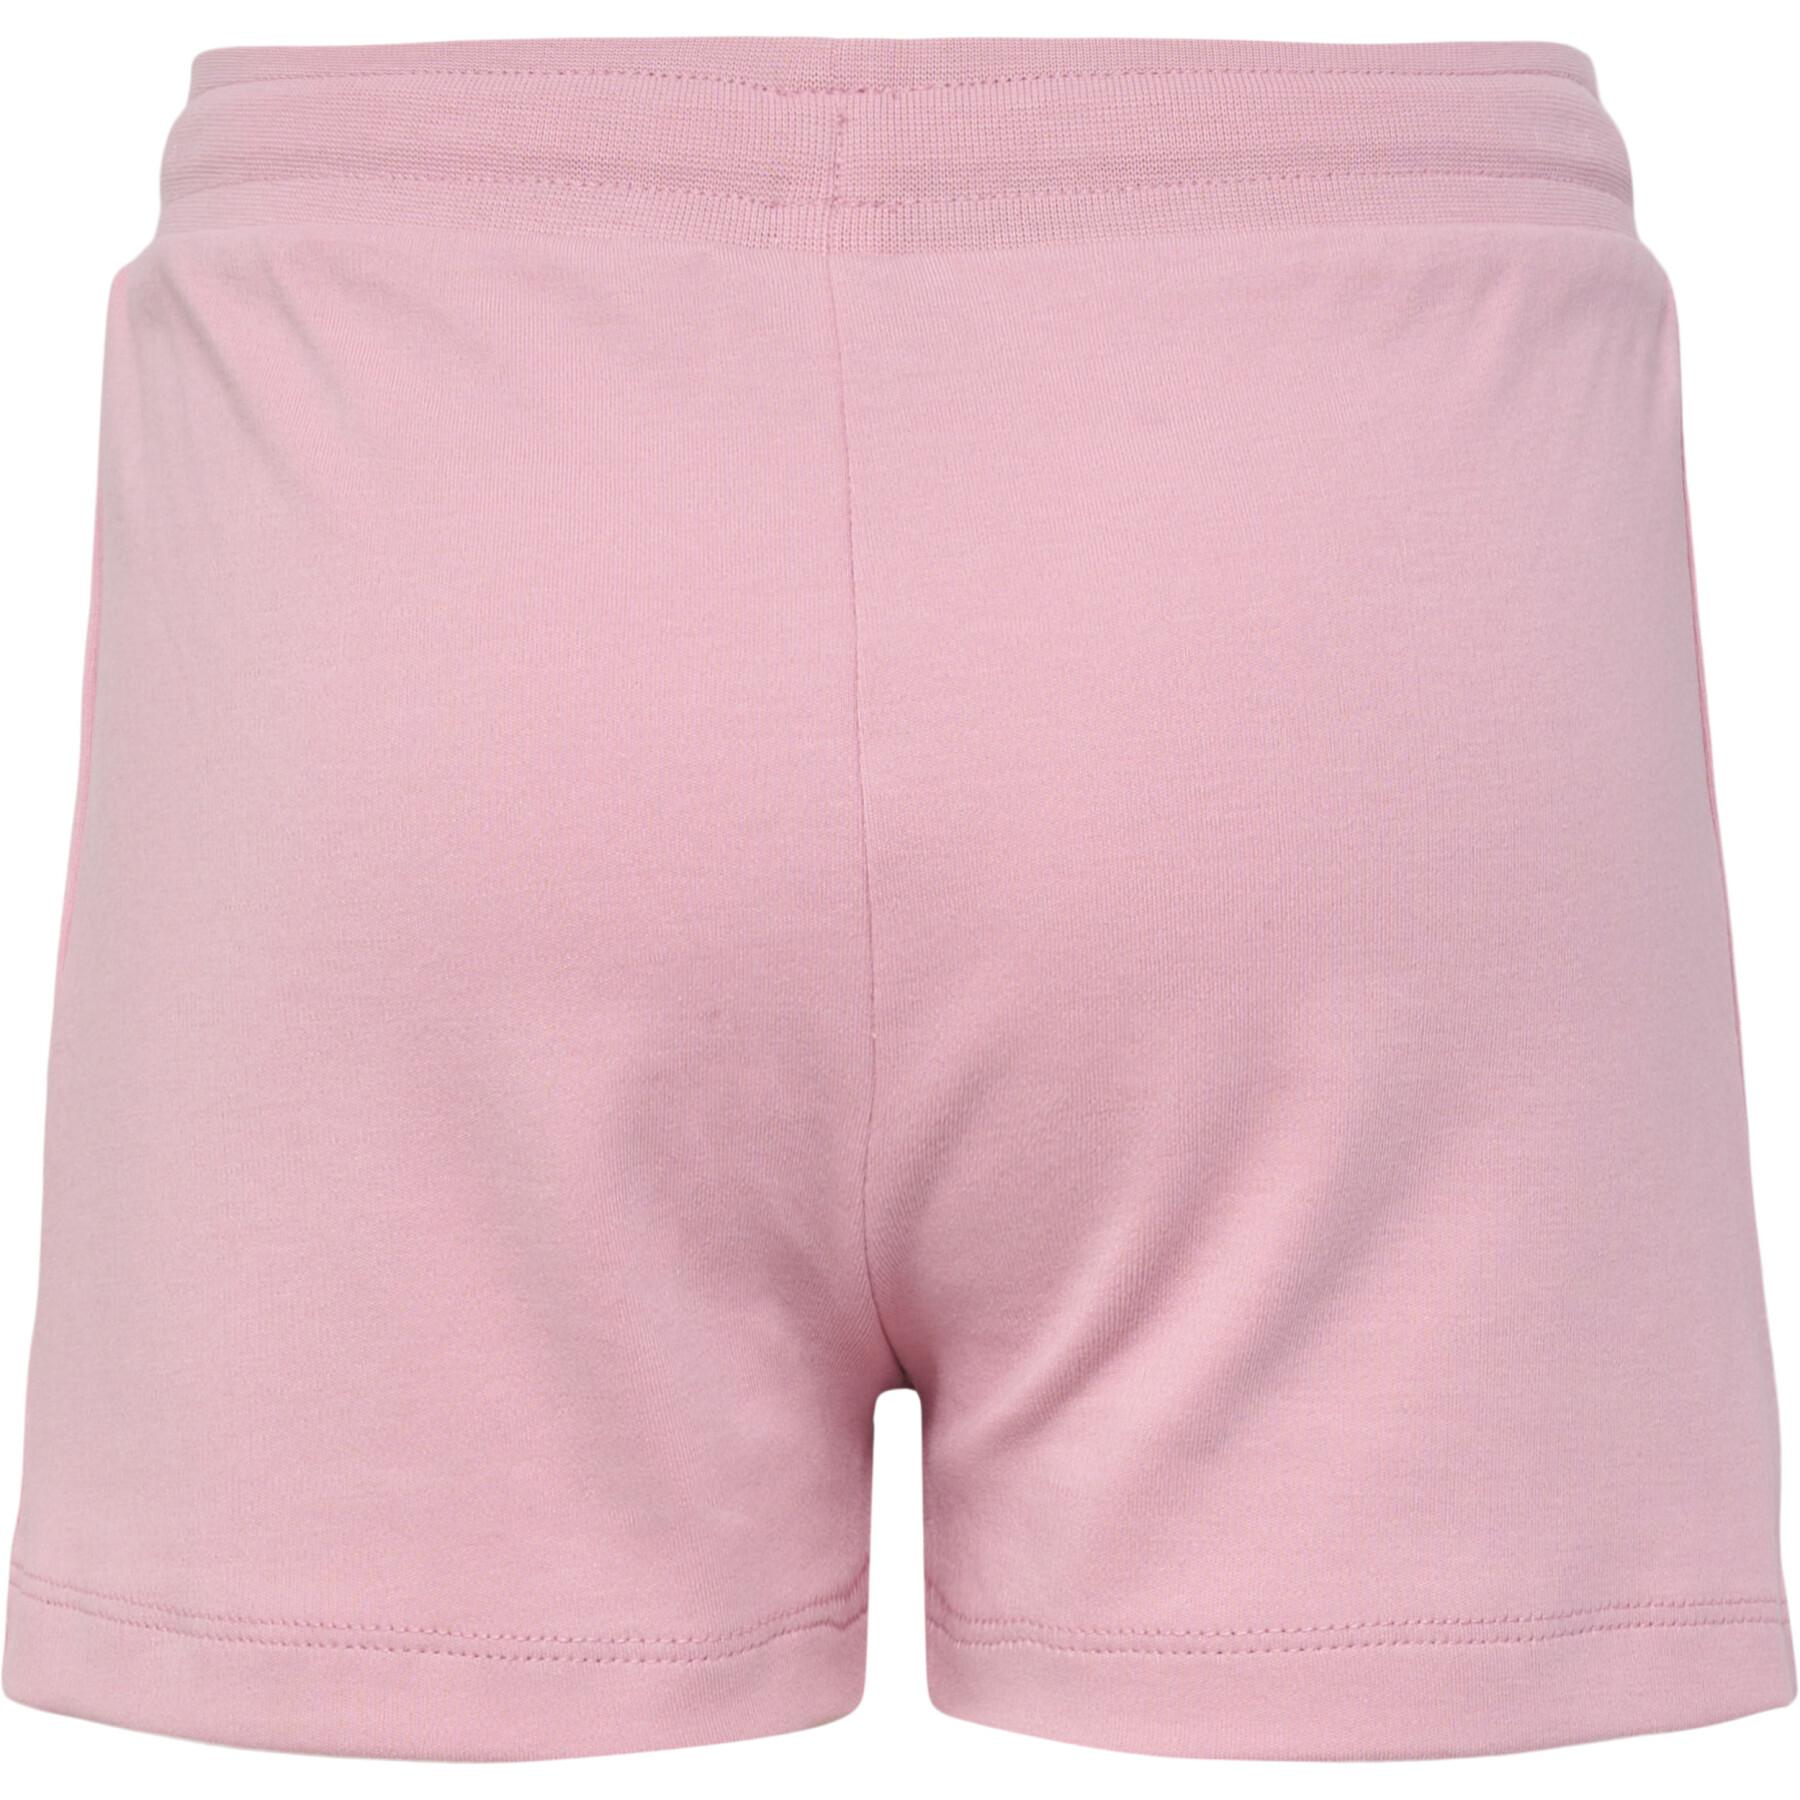 Pantalón corto para niñas Hummel Nille